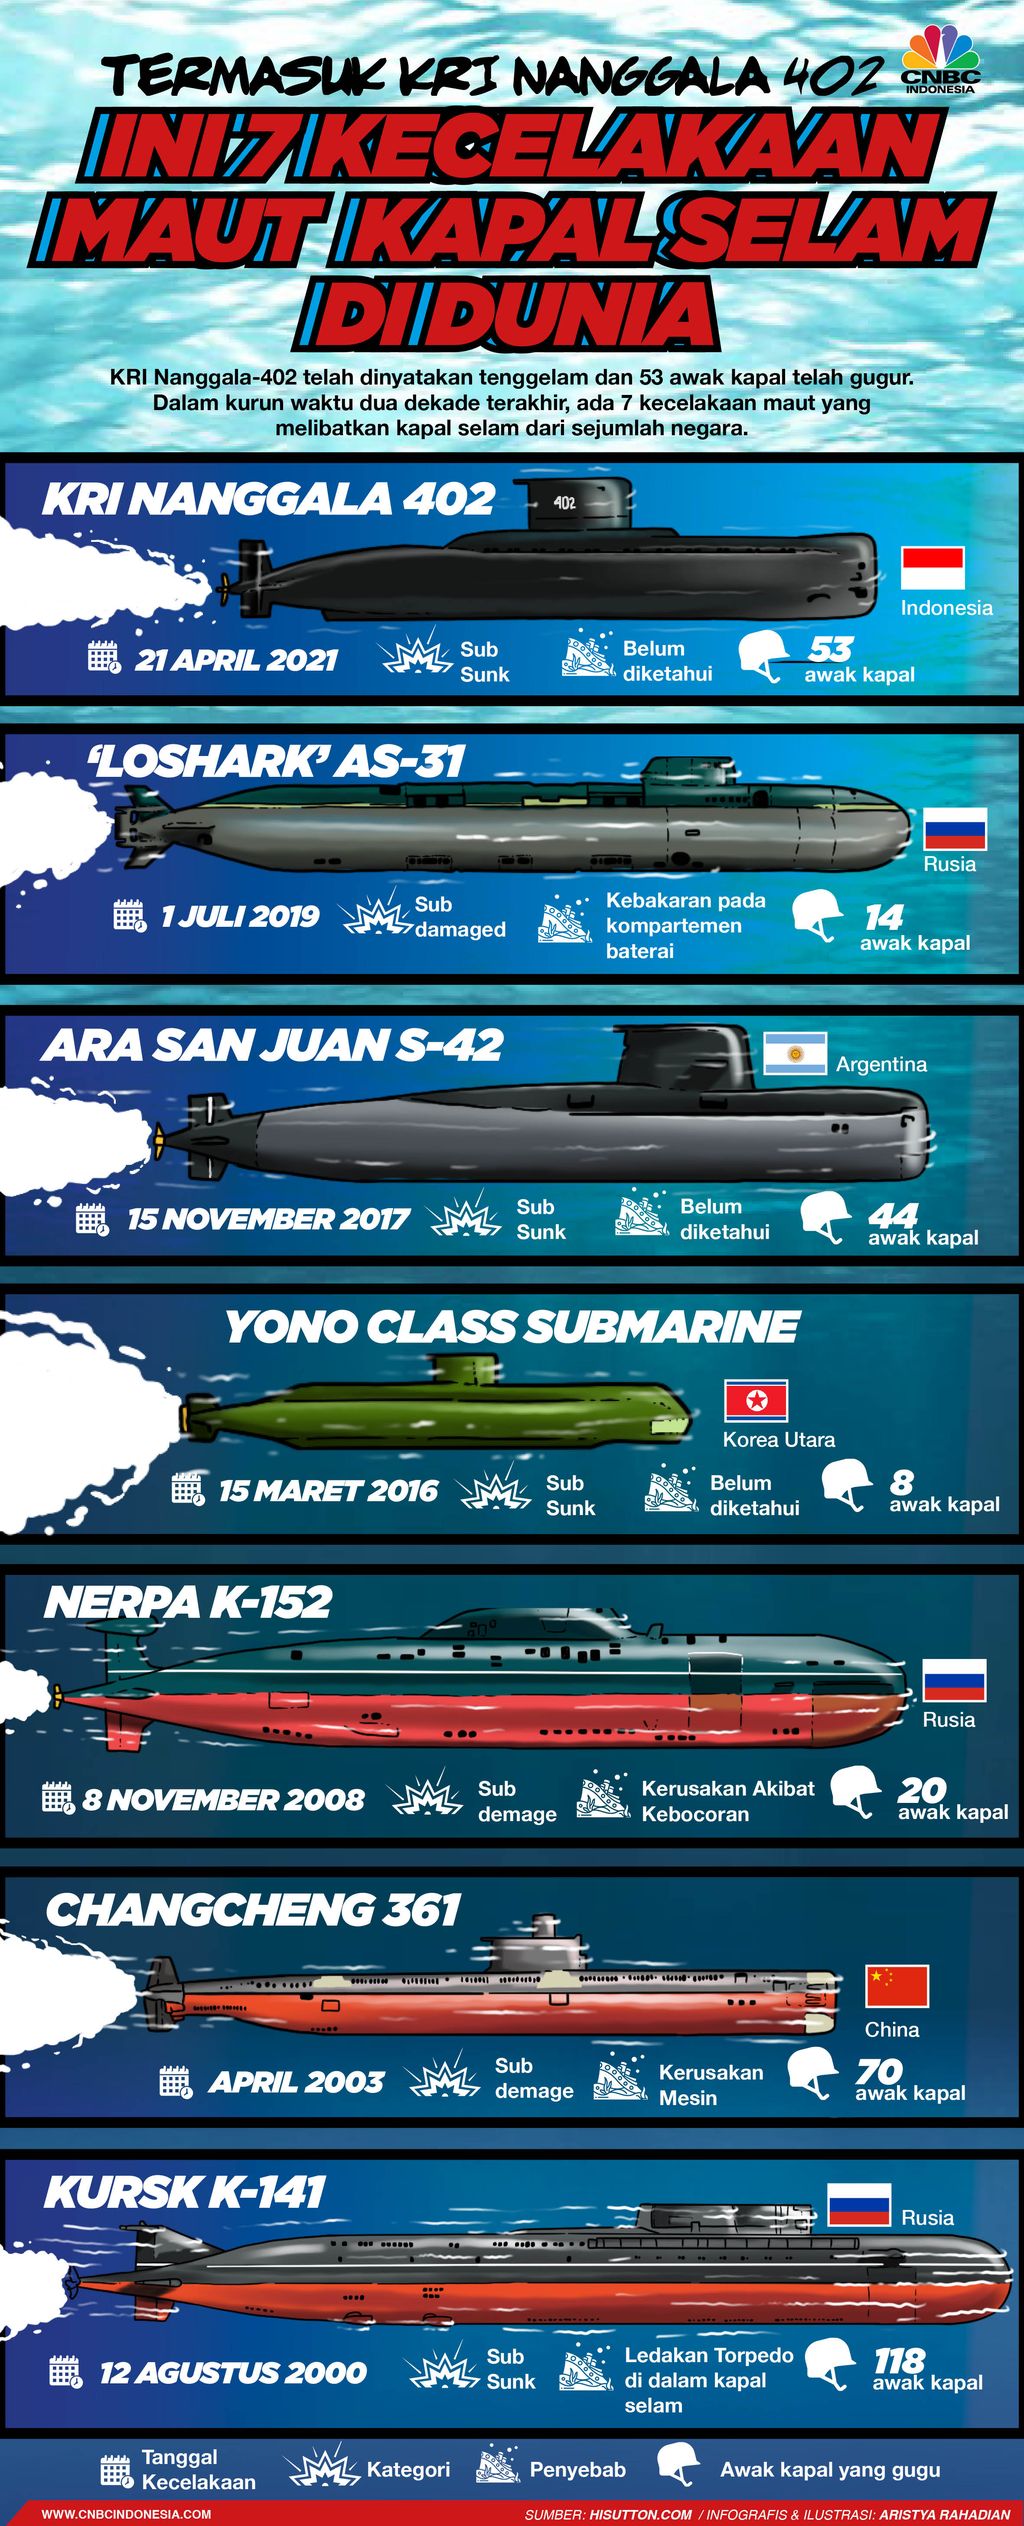 Infografis/ Termasuk KRI Nanggala 402, ini 7 Kelecelakaan maut kapal selam di dunia/Aristya Rahadian